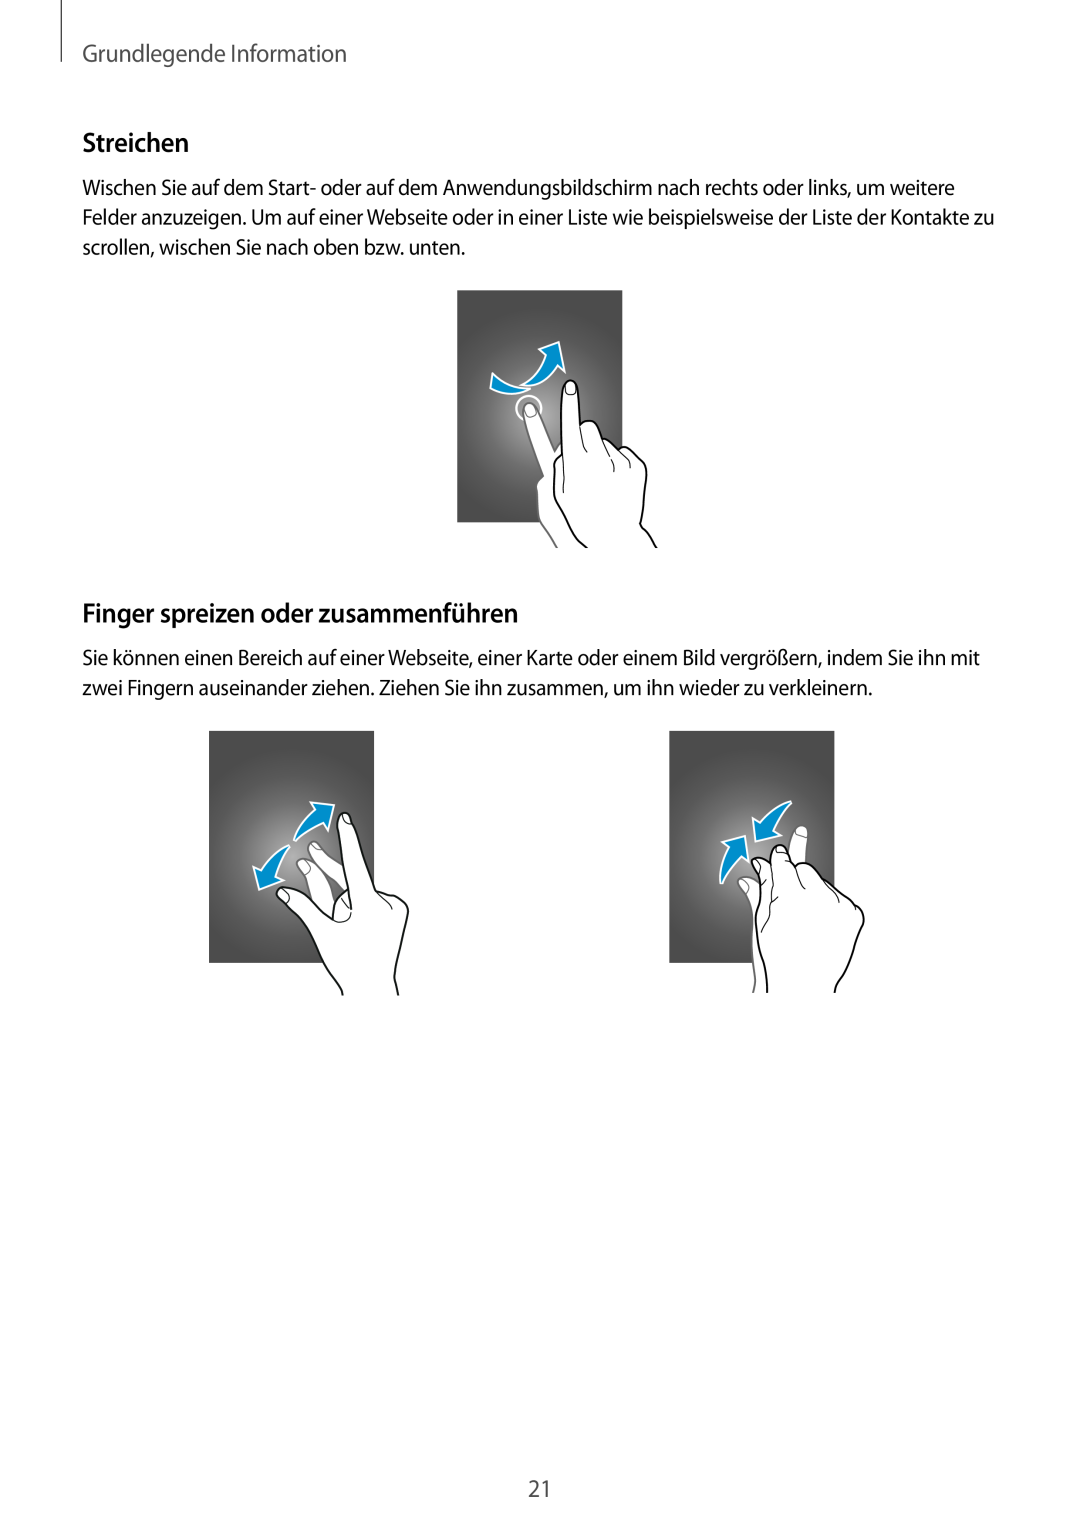 Samsung SM-G110HZKAMEO, SM-G110HZKAXEO manual Streichen, Finger spreizen oder zusammenführen, Grundlegende Information 